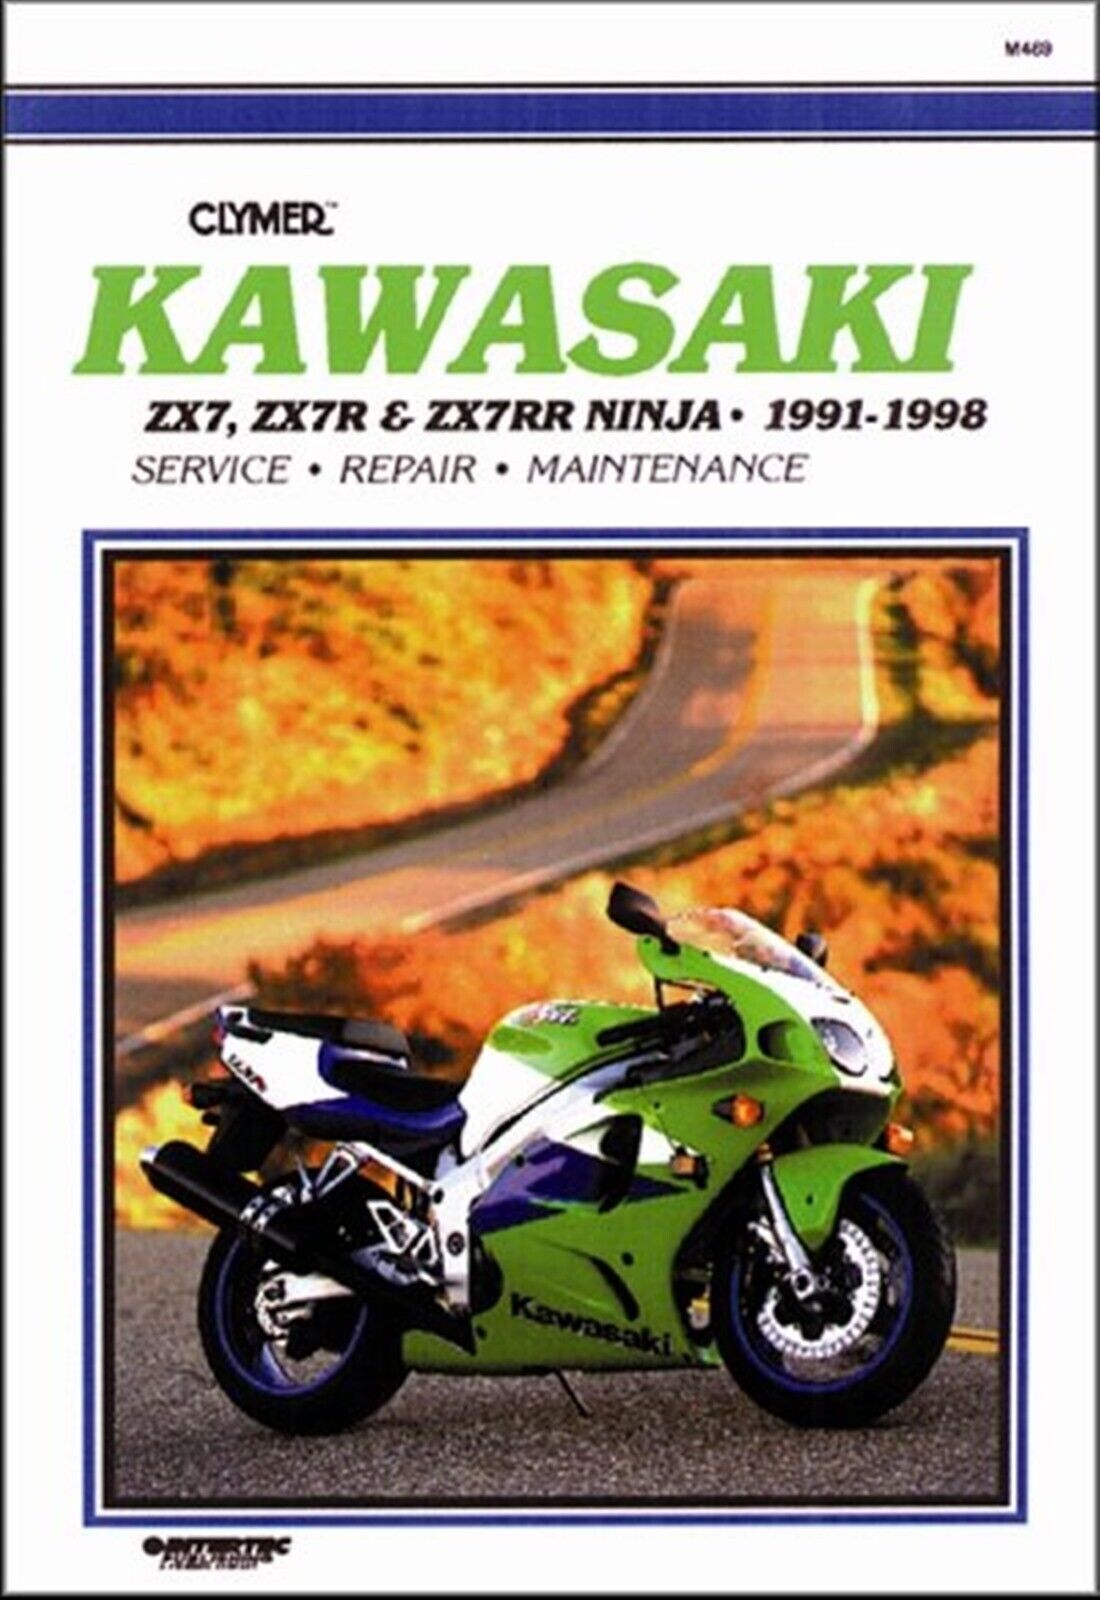 Kawasaki Ninja ZX7, ZX7R, ZX7RR Repair Manual 1991-1998 | eBay